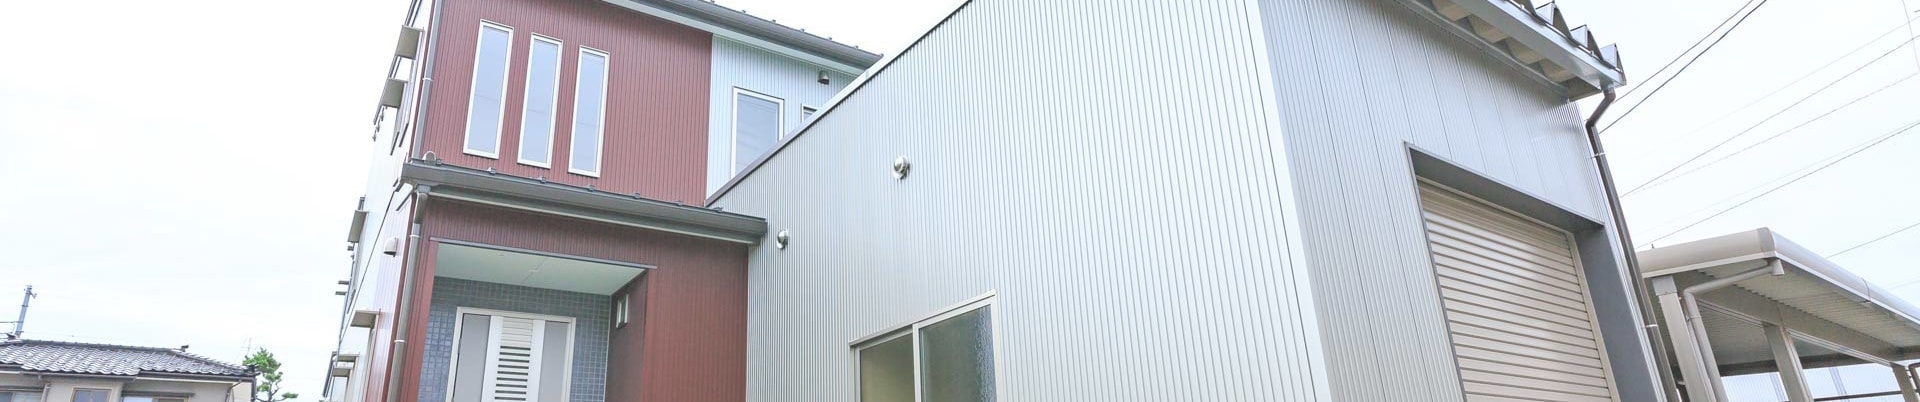 新潟県上越市で住宅・店舗設計のことならたけ建築事務所へ